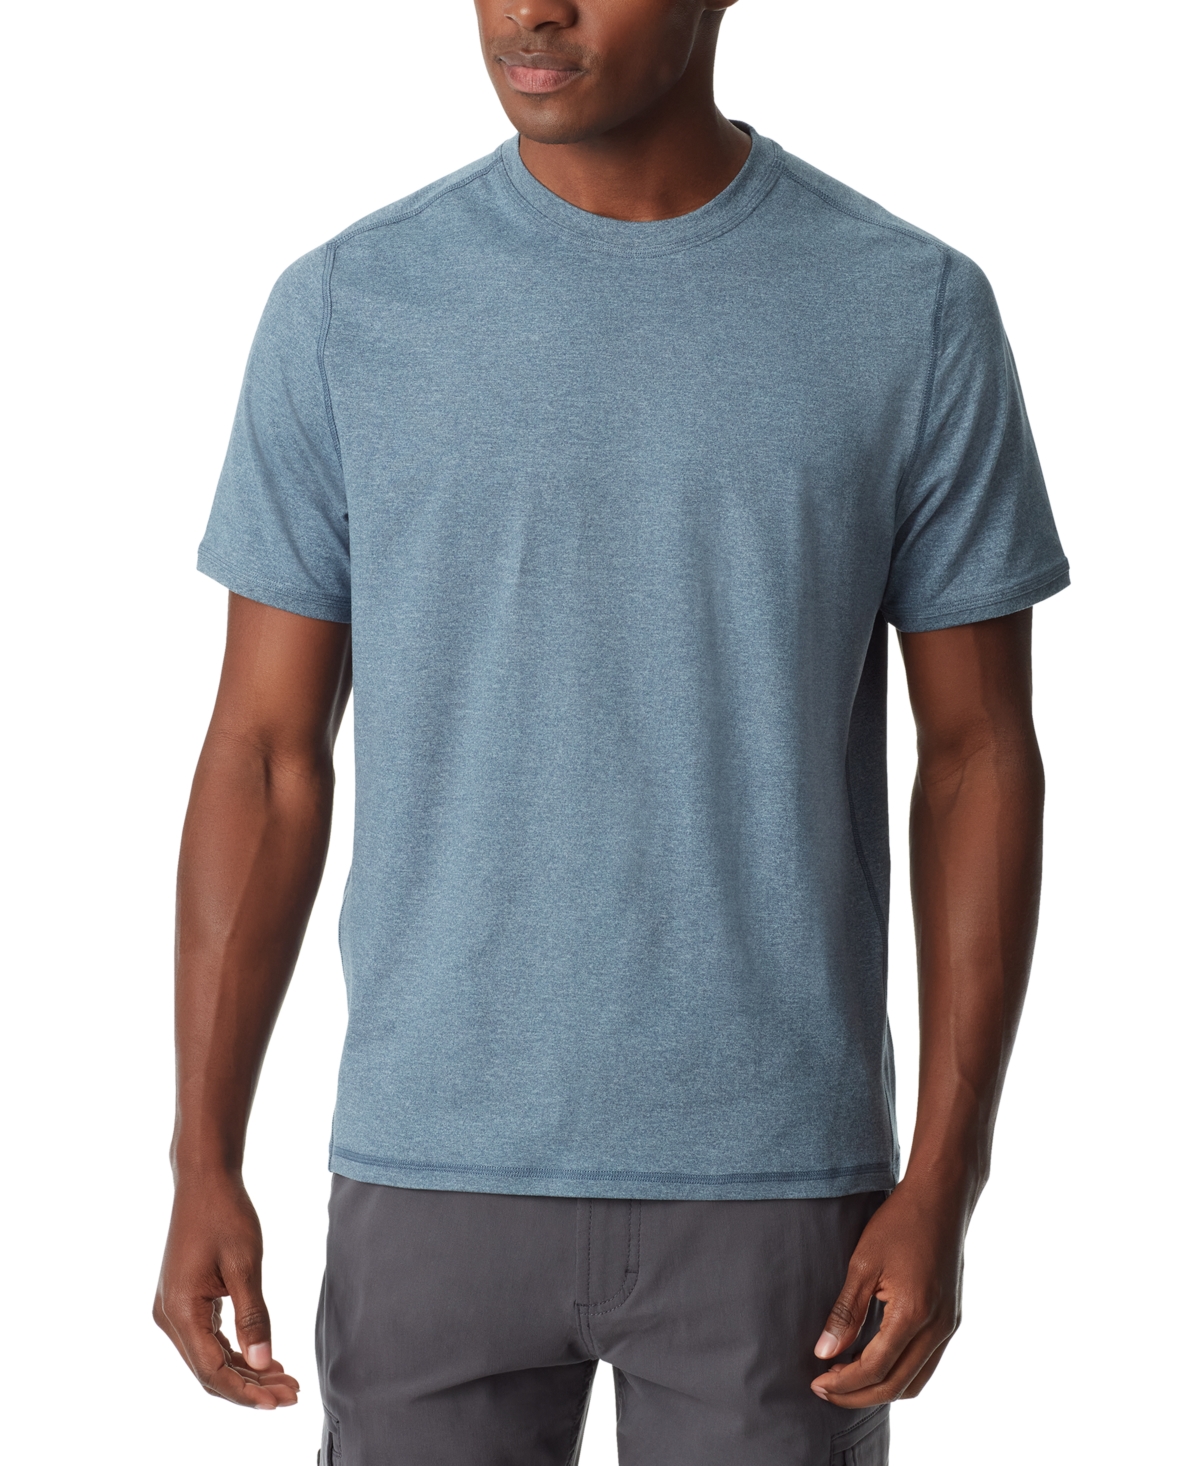 Men's Core Performance T-Shirt - Big Dipper